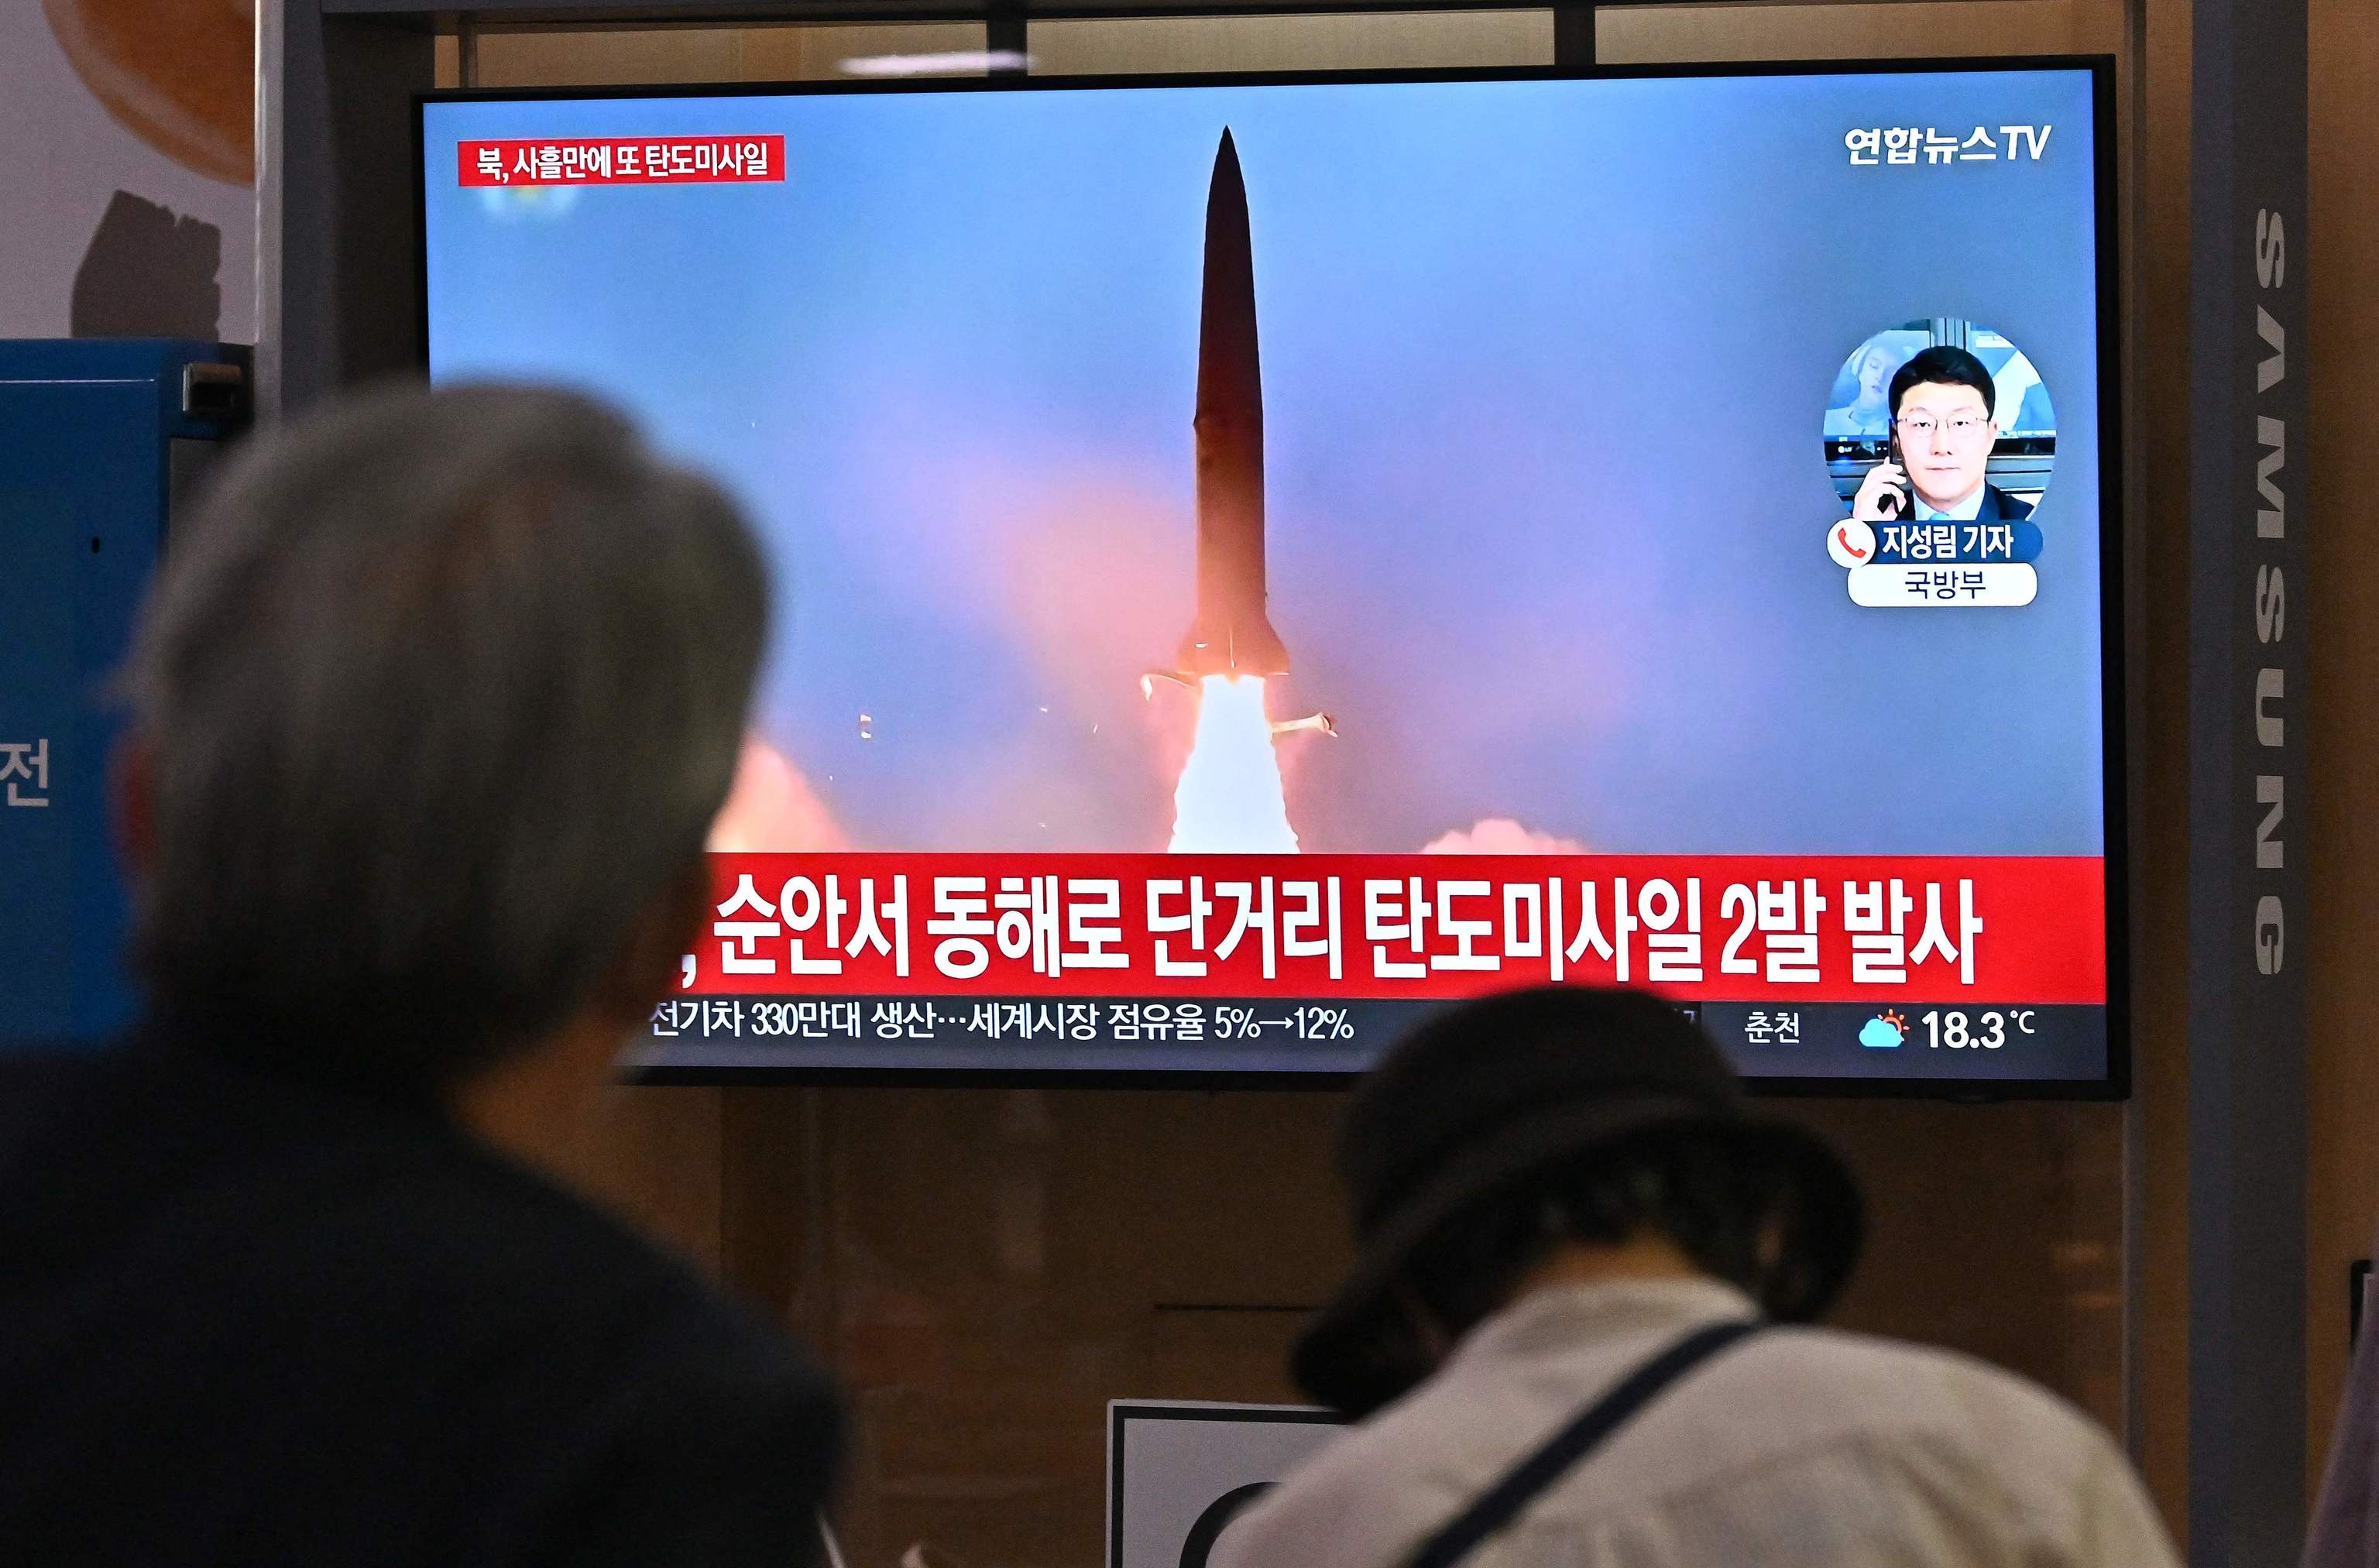 Imágenes del misil balístico en la televisión surcoreana.